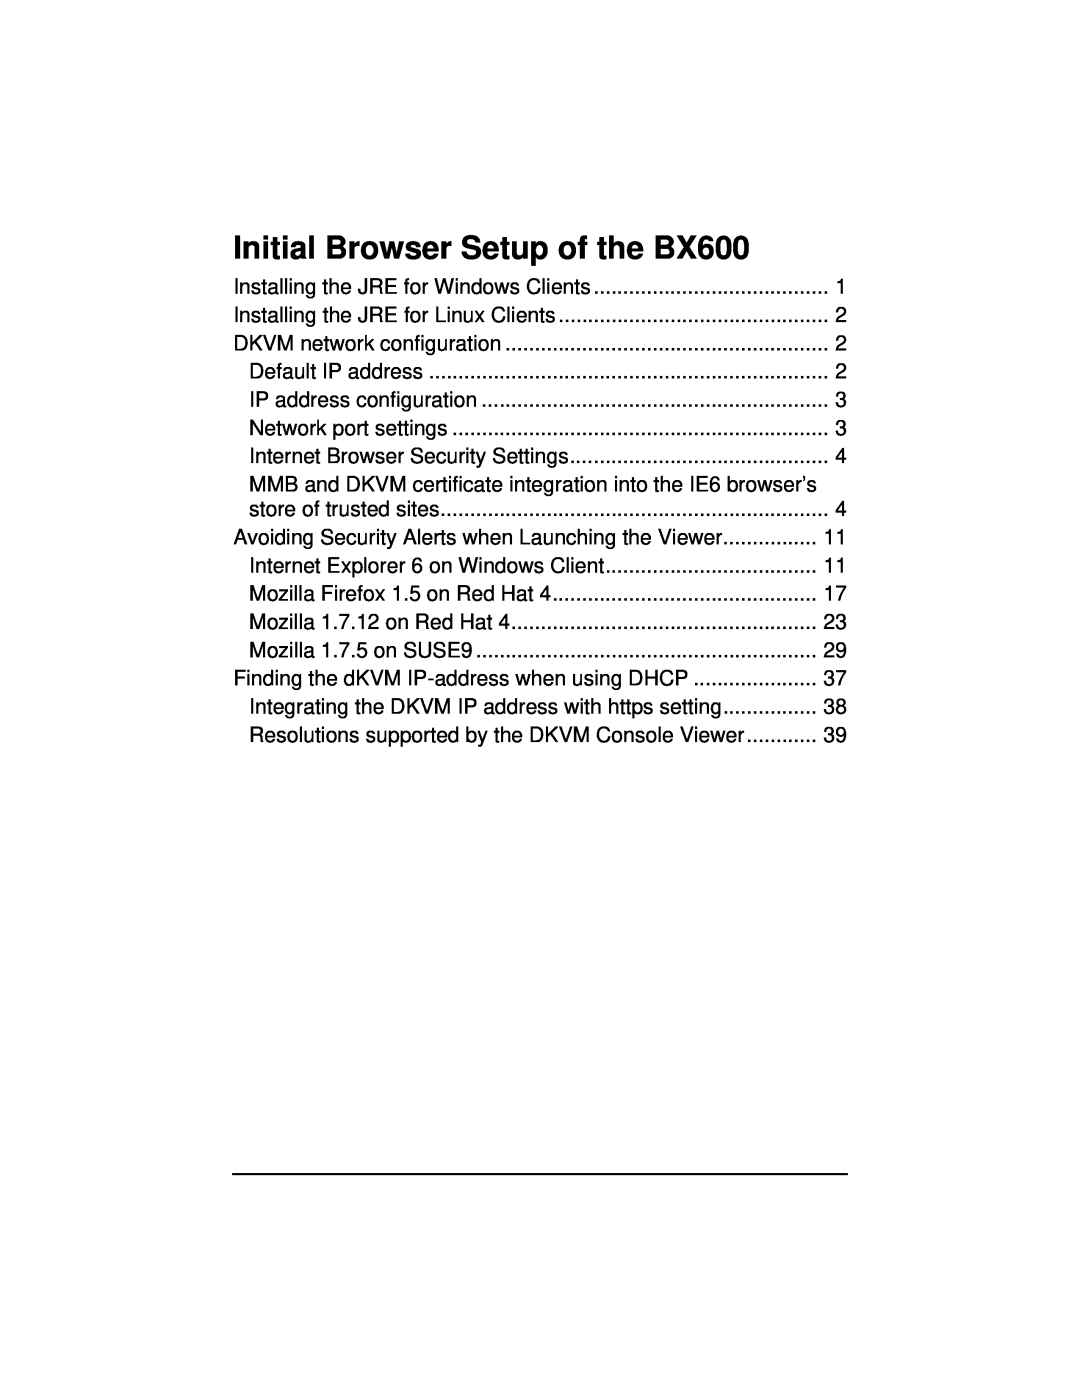 Fujitsu manual Initial Browser Setup of the BX600 